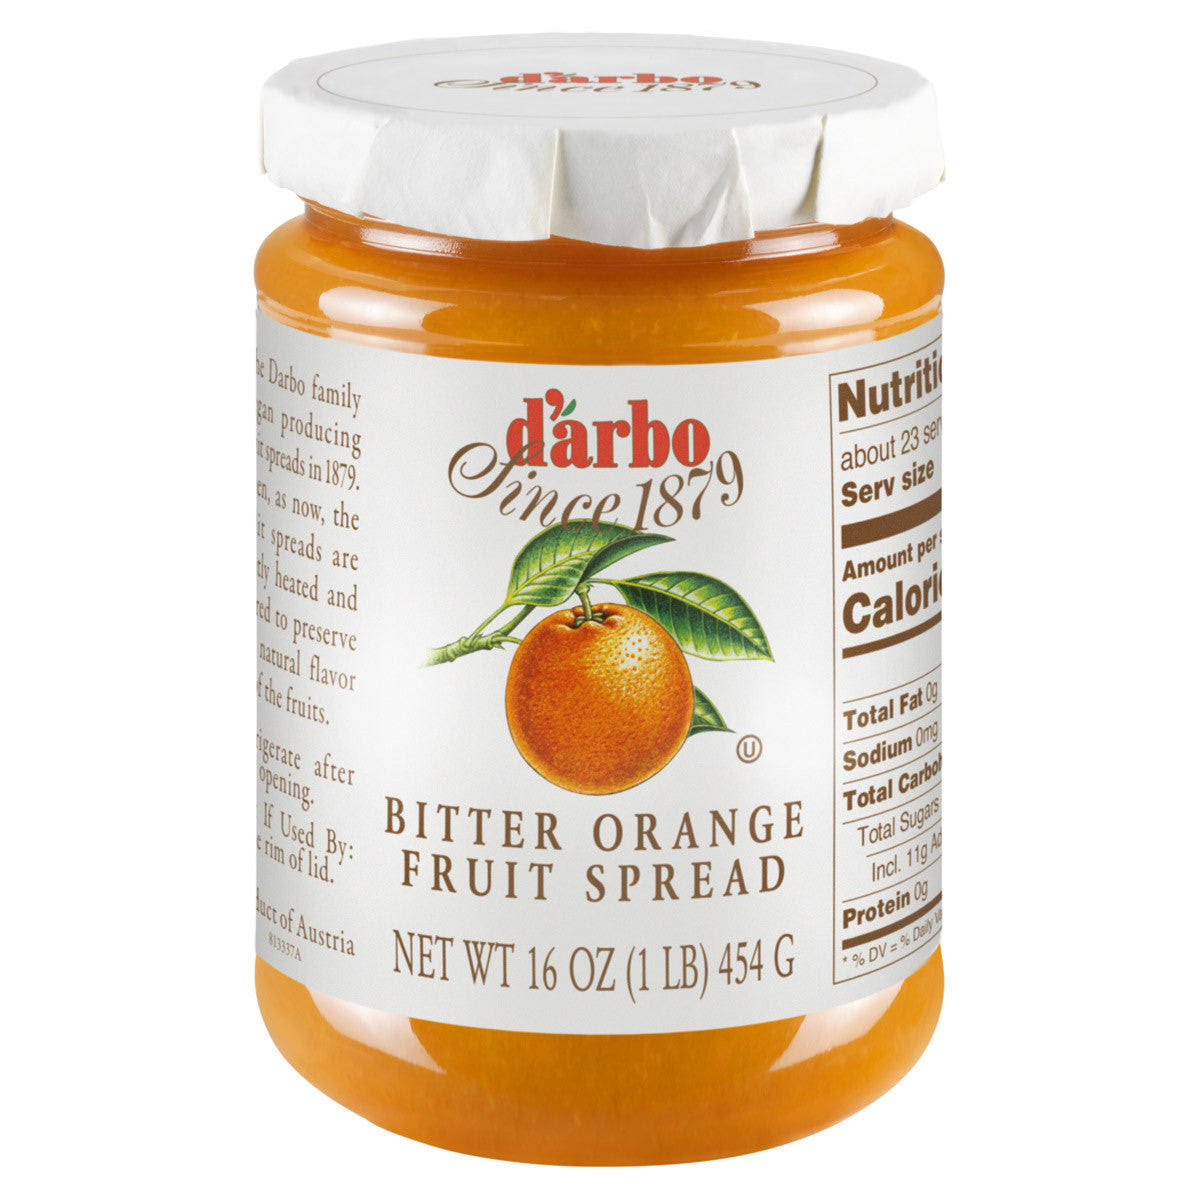 Darbo Fruit Spread, Bitter Orange - 16 oz